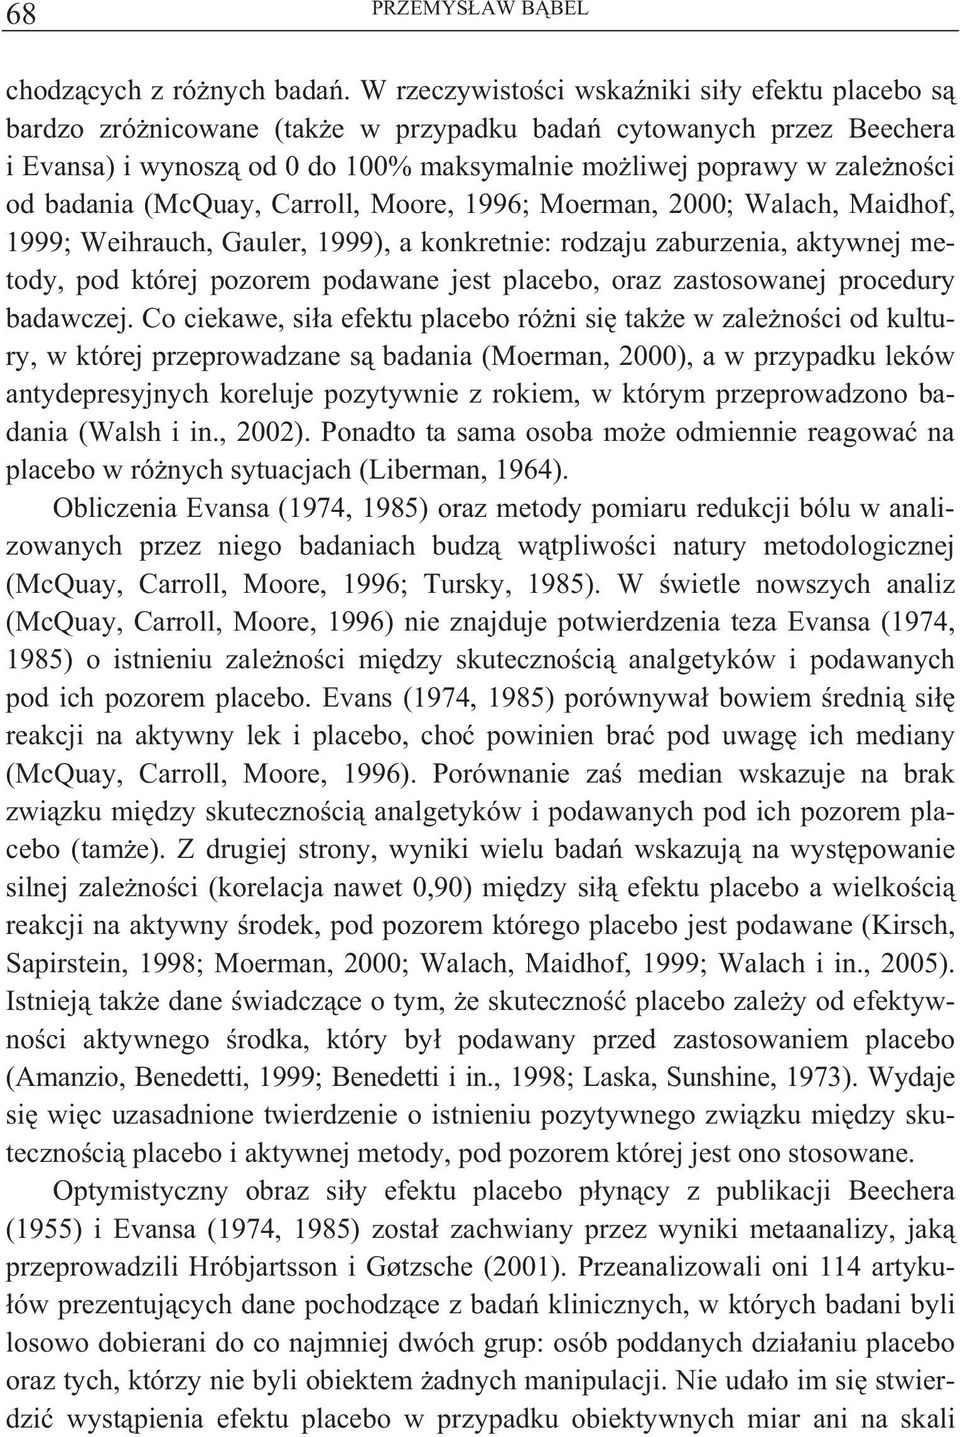 badania (McQuay, Carroll, Moore, 1996; Moerman, 2000; Walach, Maidhof, 1999; Weihrauch, Gauler, 1999), a konkretnie: rodzaju zaburzenia, aktywnej metody, pod której pozorem podawane jest placebo,